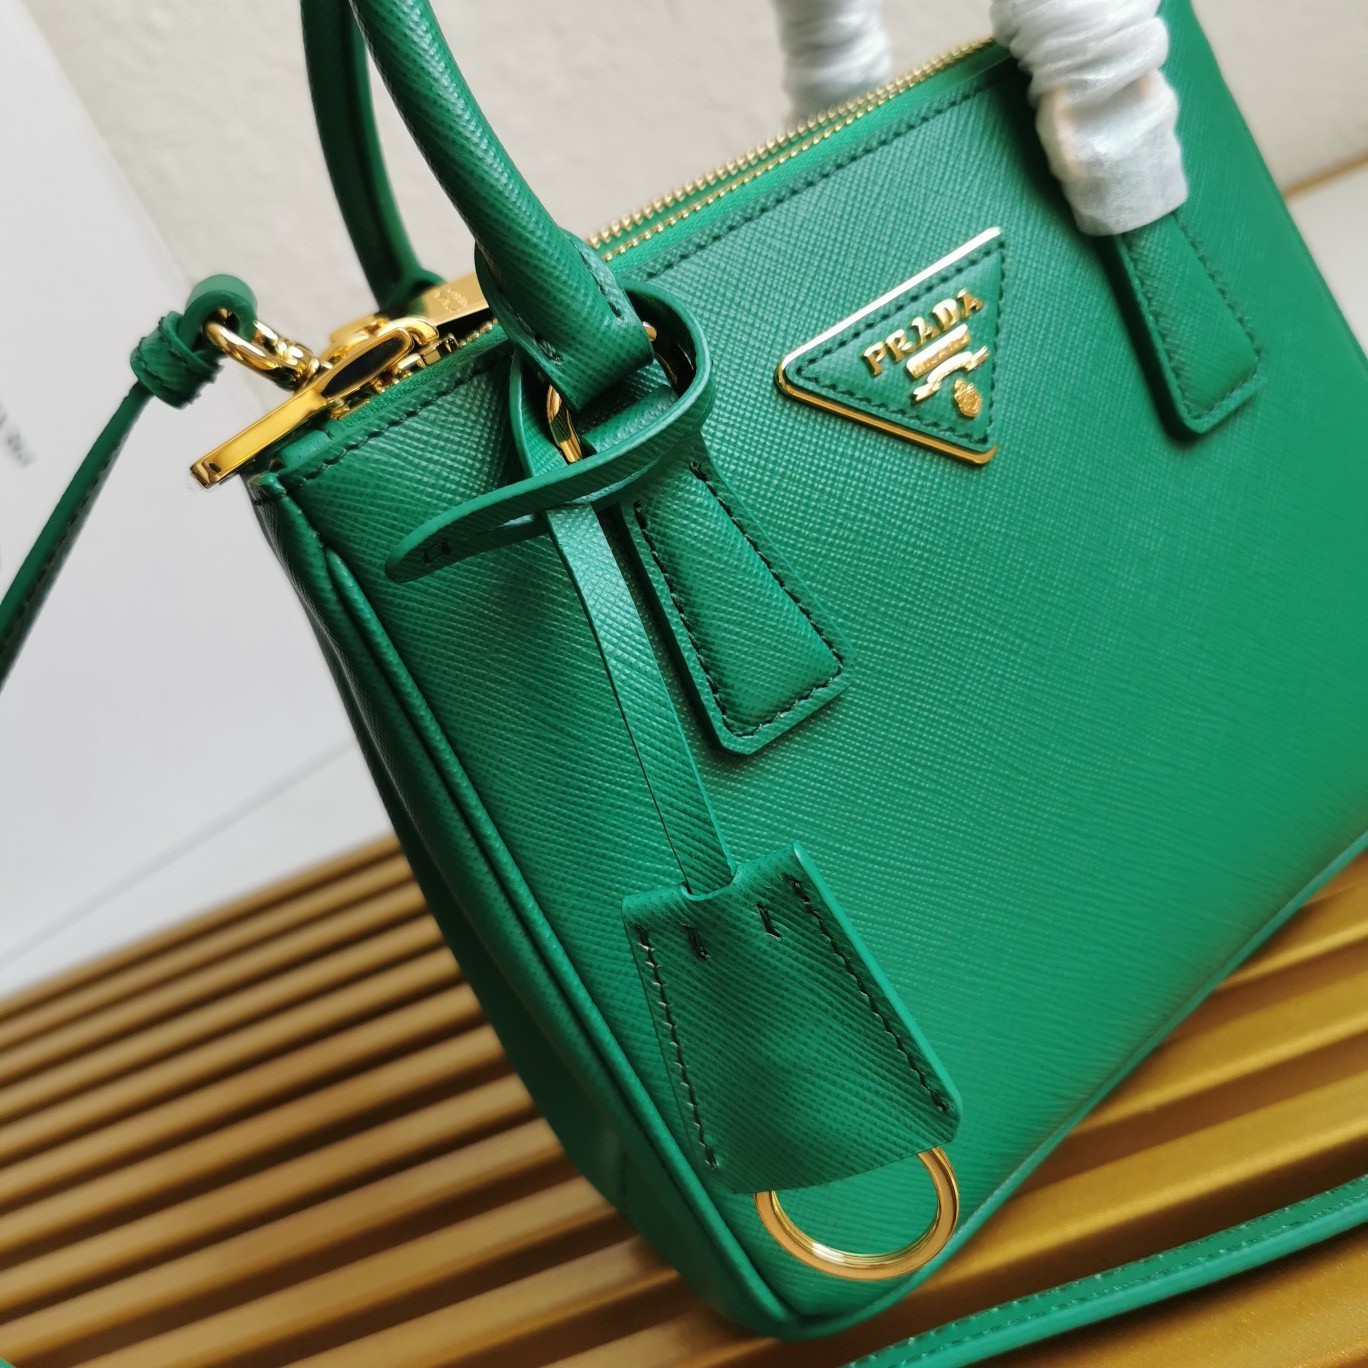 Prada Mini Galleria Bag In Green Saffiano Leather 557